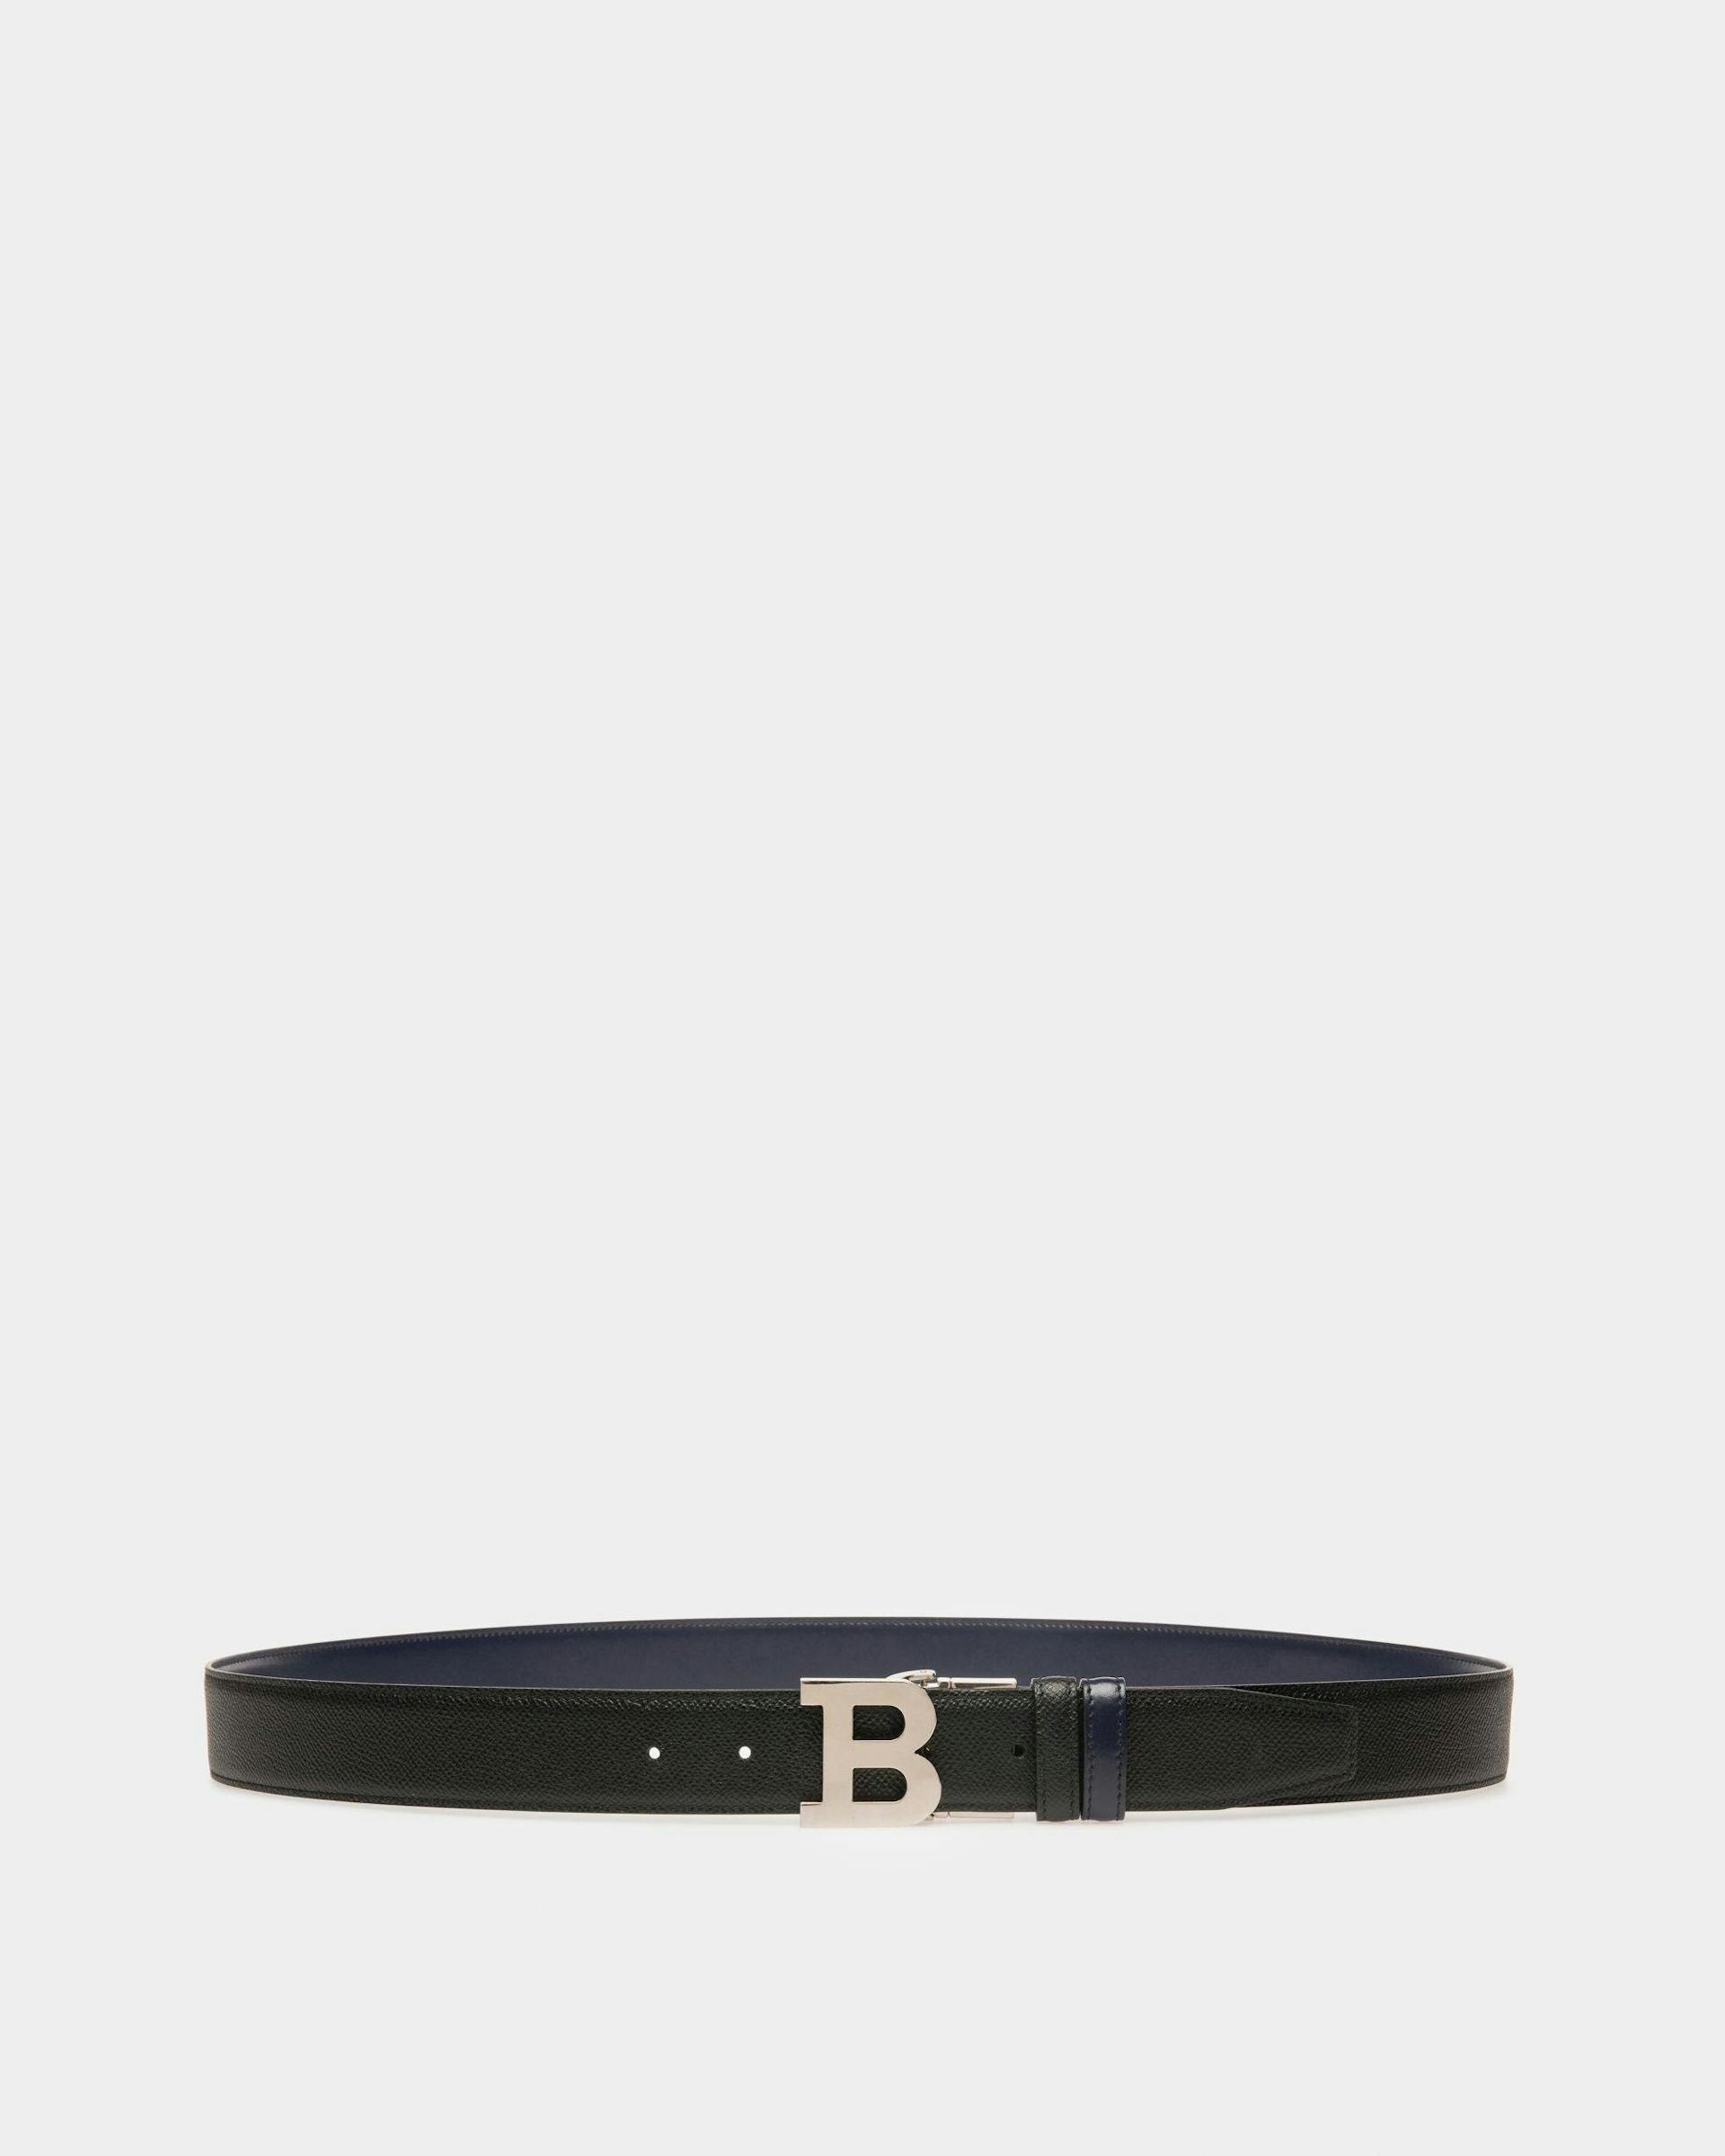 B Buckle Leather 35mm Belt In Black & Navy - Men's - Bally - 01